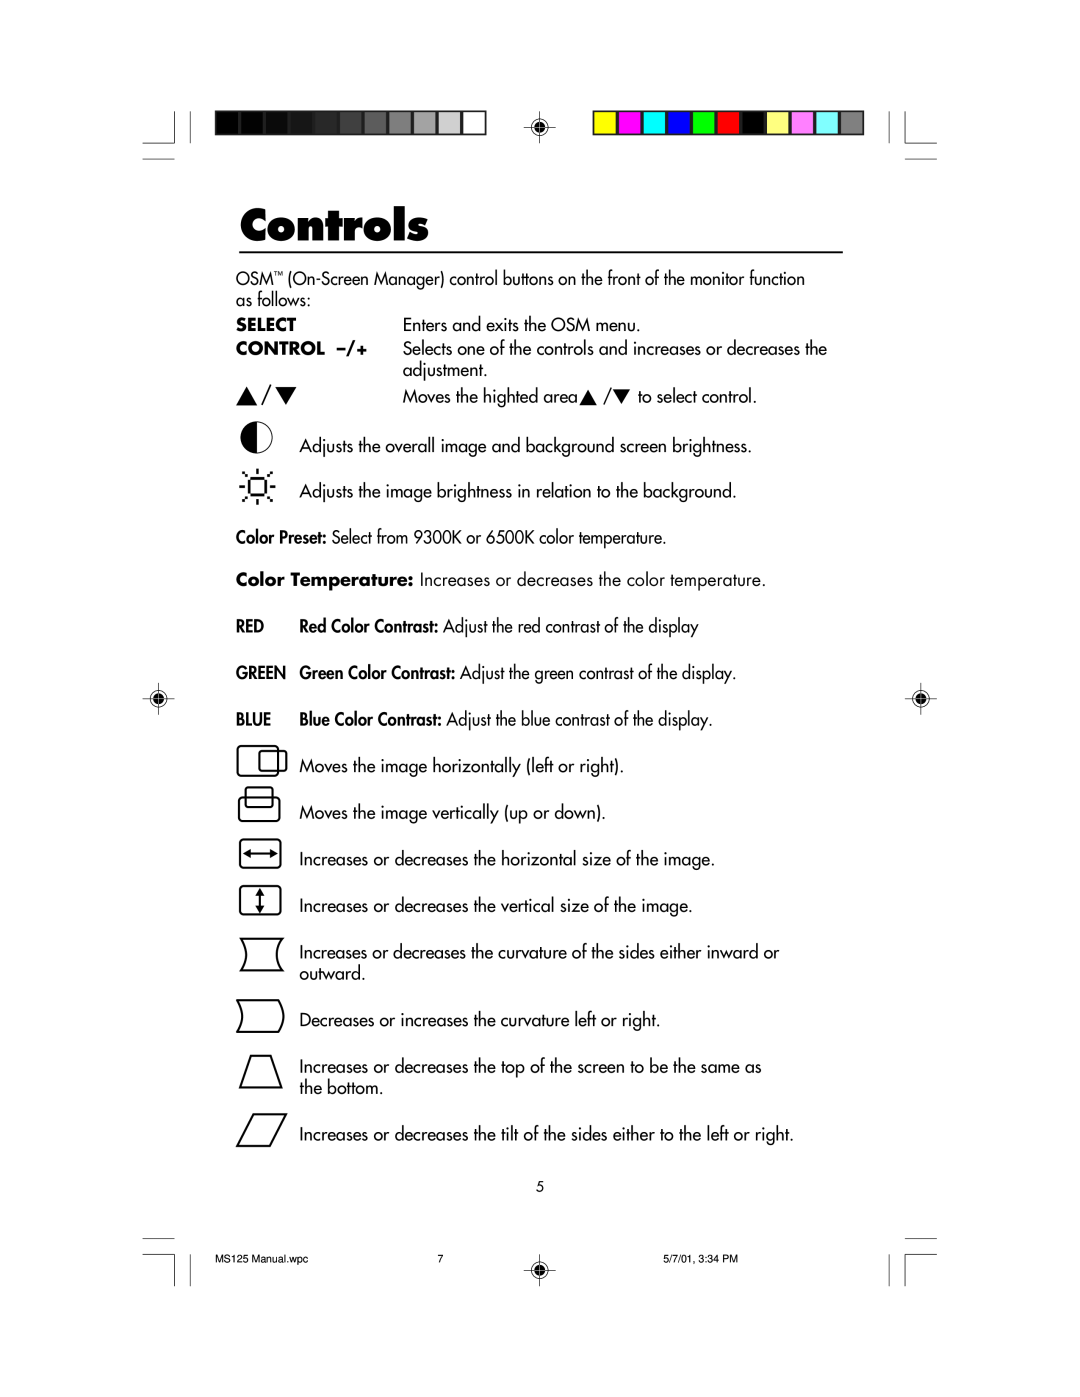 NEC MS125 manual Controls, Select, Enters and exits the OSM menu, Control -/+, adjustment 